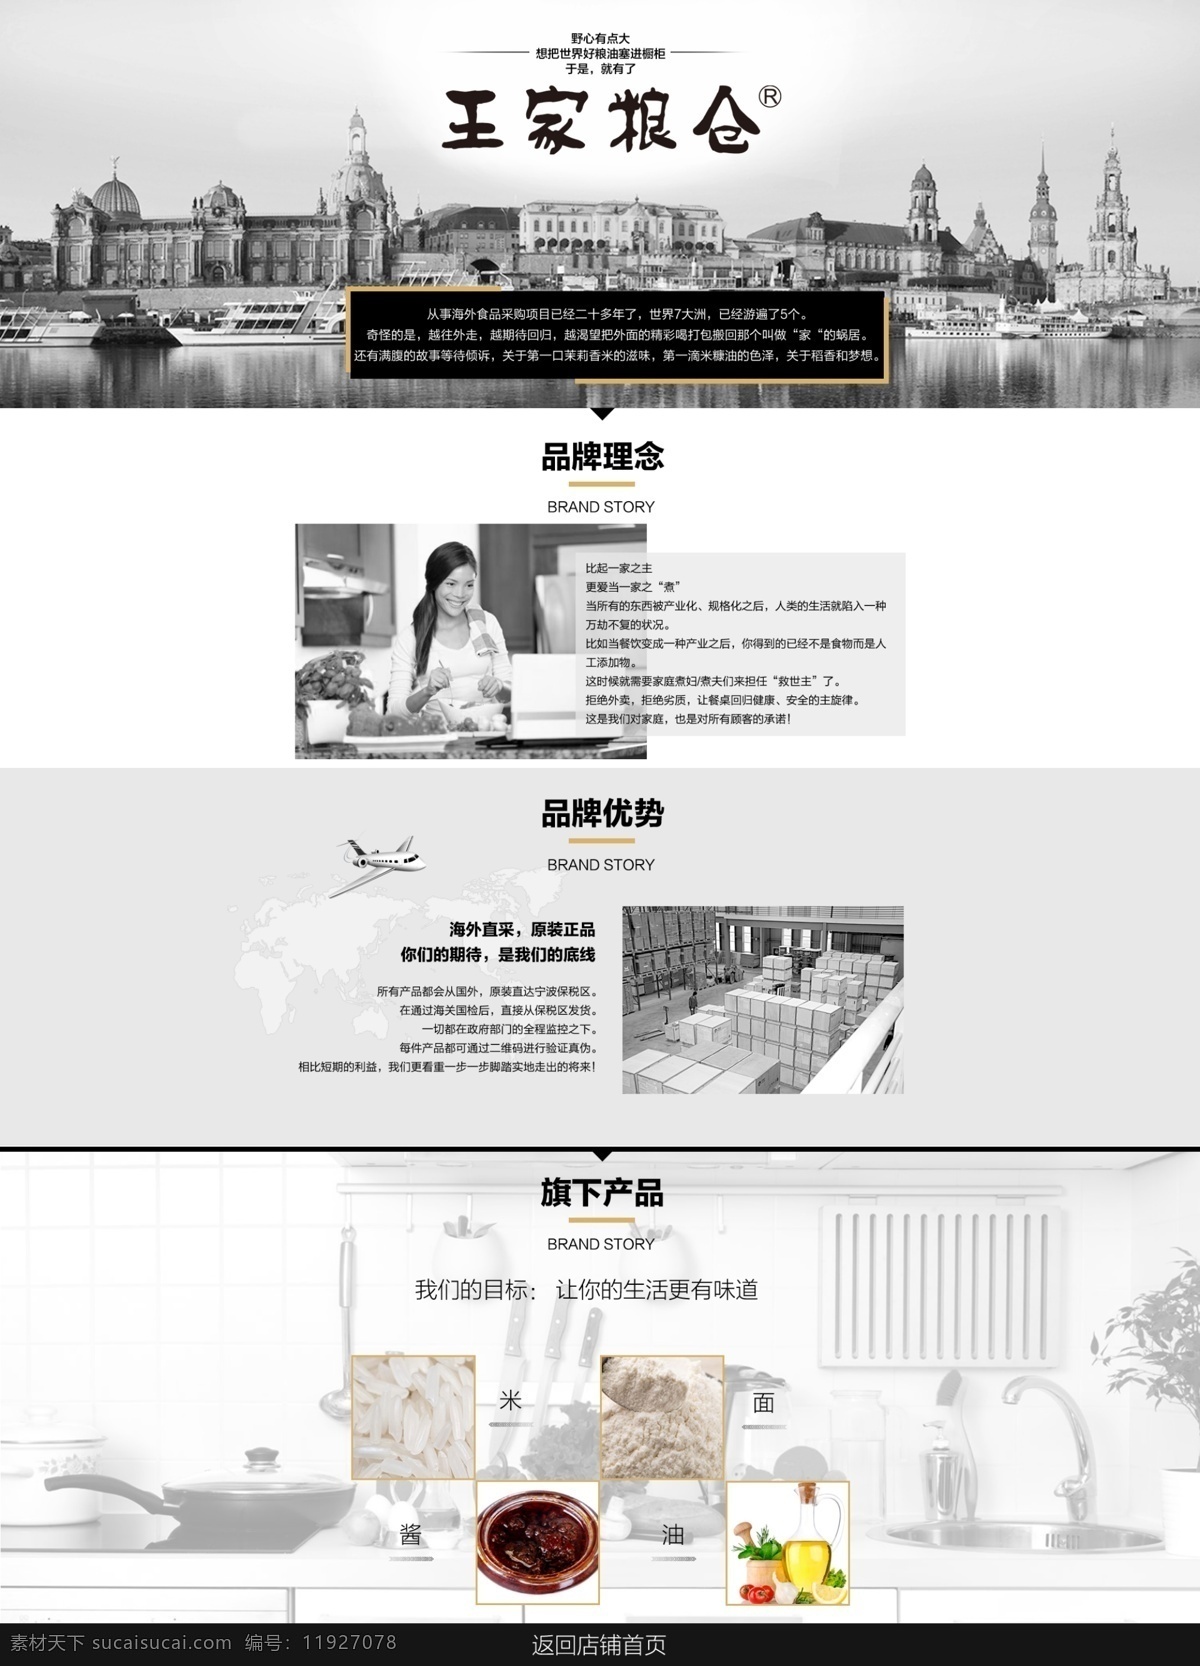 黑白 两 色 品牌故事 页面 品牌 故事 淘宝素材 淘宝设计 淘宝模板下载 白色